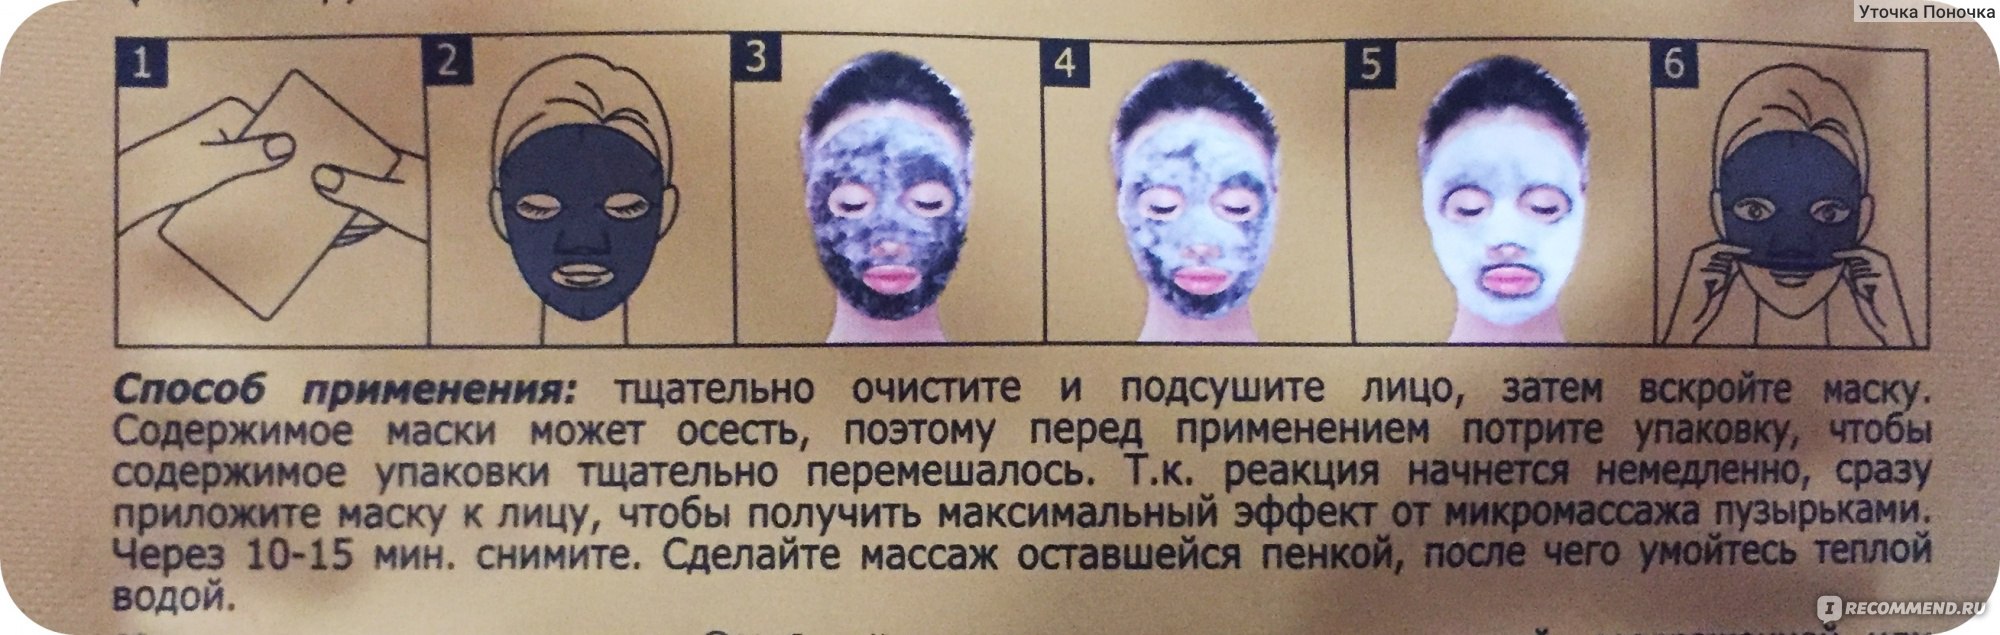 После тканевой маски нужно ли мыть лицо. Способ применения тканевой маски. Способ применения маски для лица. После тканевой маски помыть лицо.